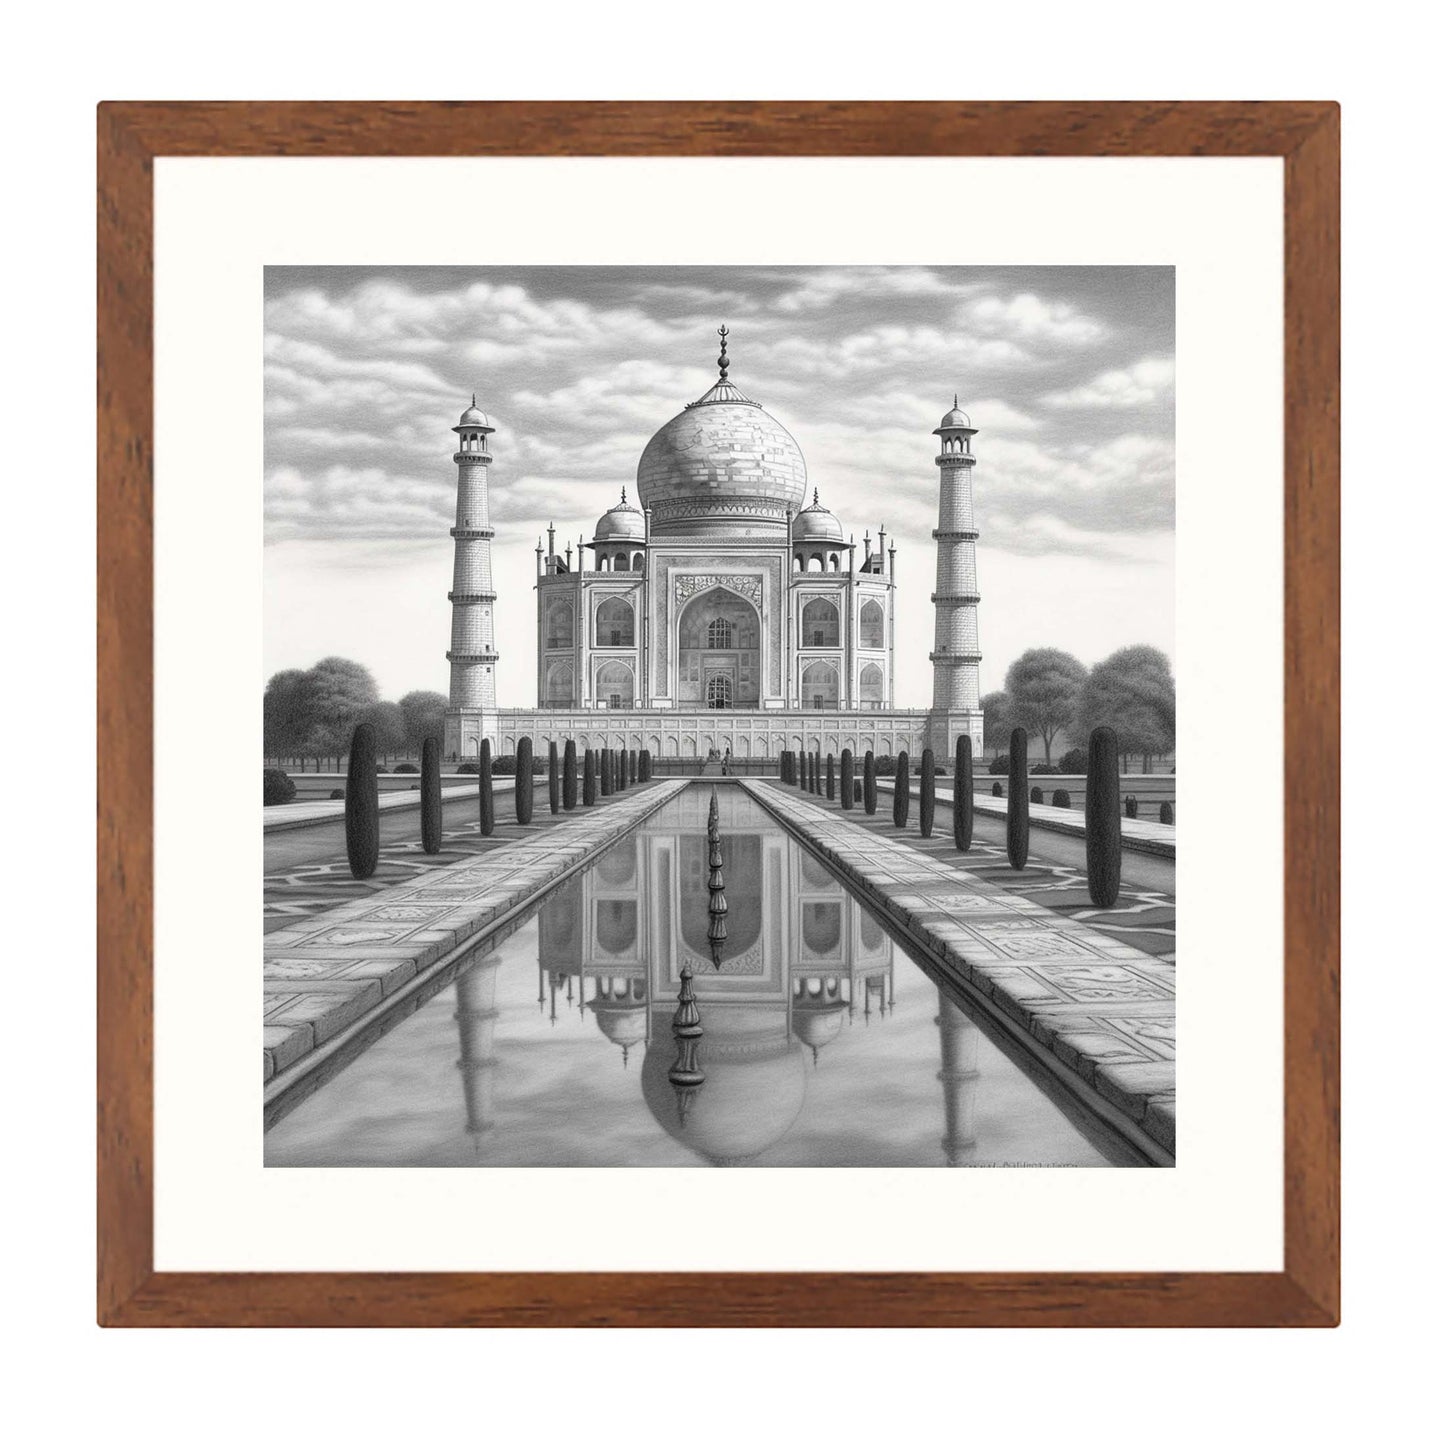 Taj Mahal - Wandbild in der Stilrichtung einer Zeichnung